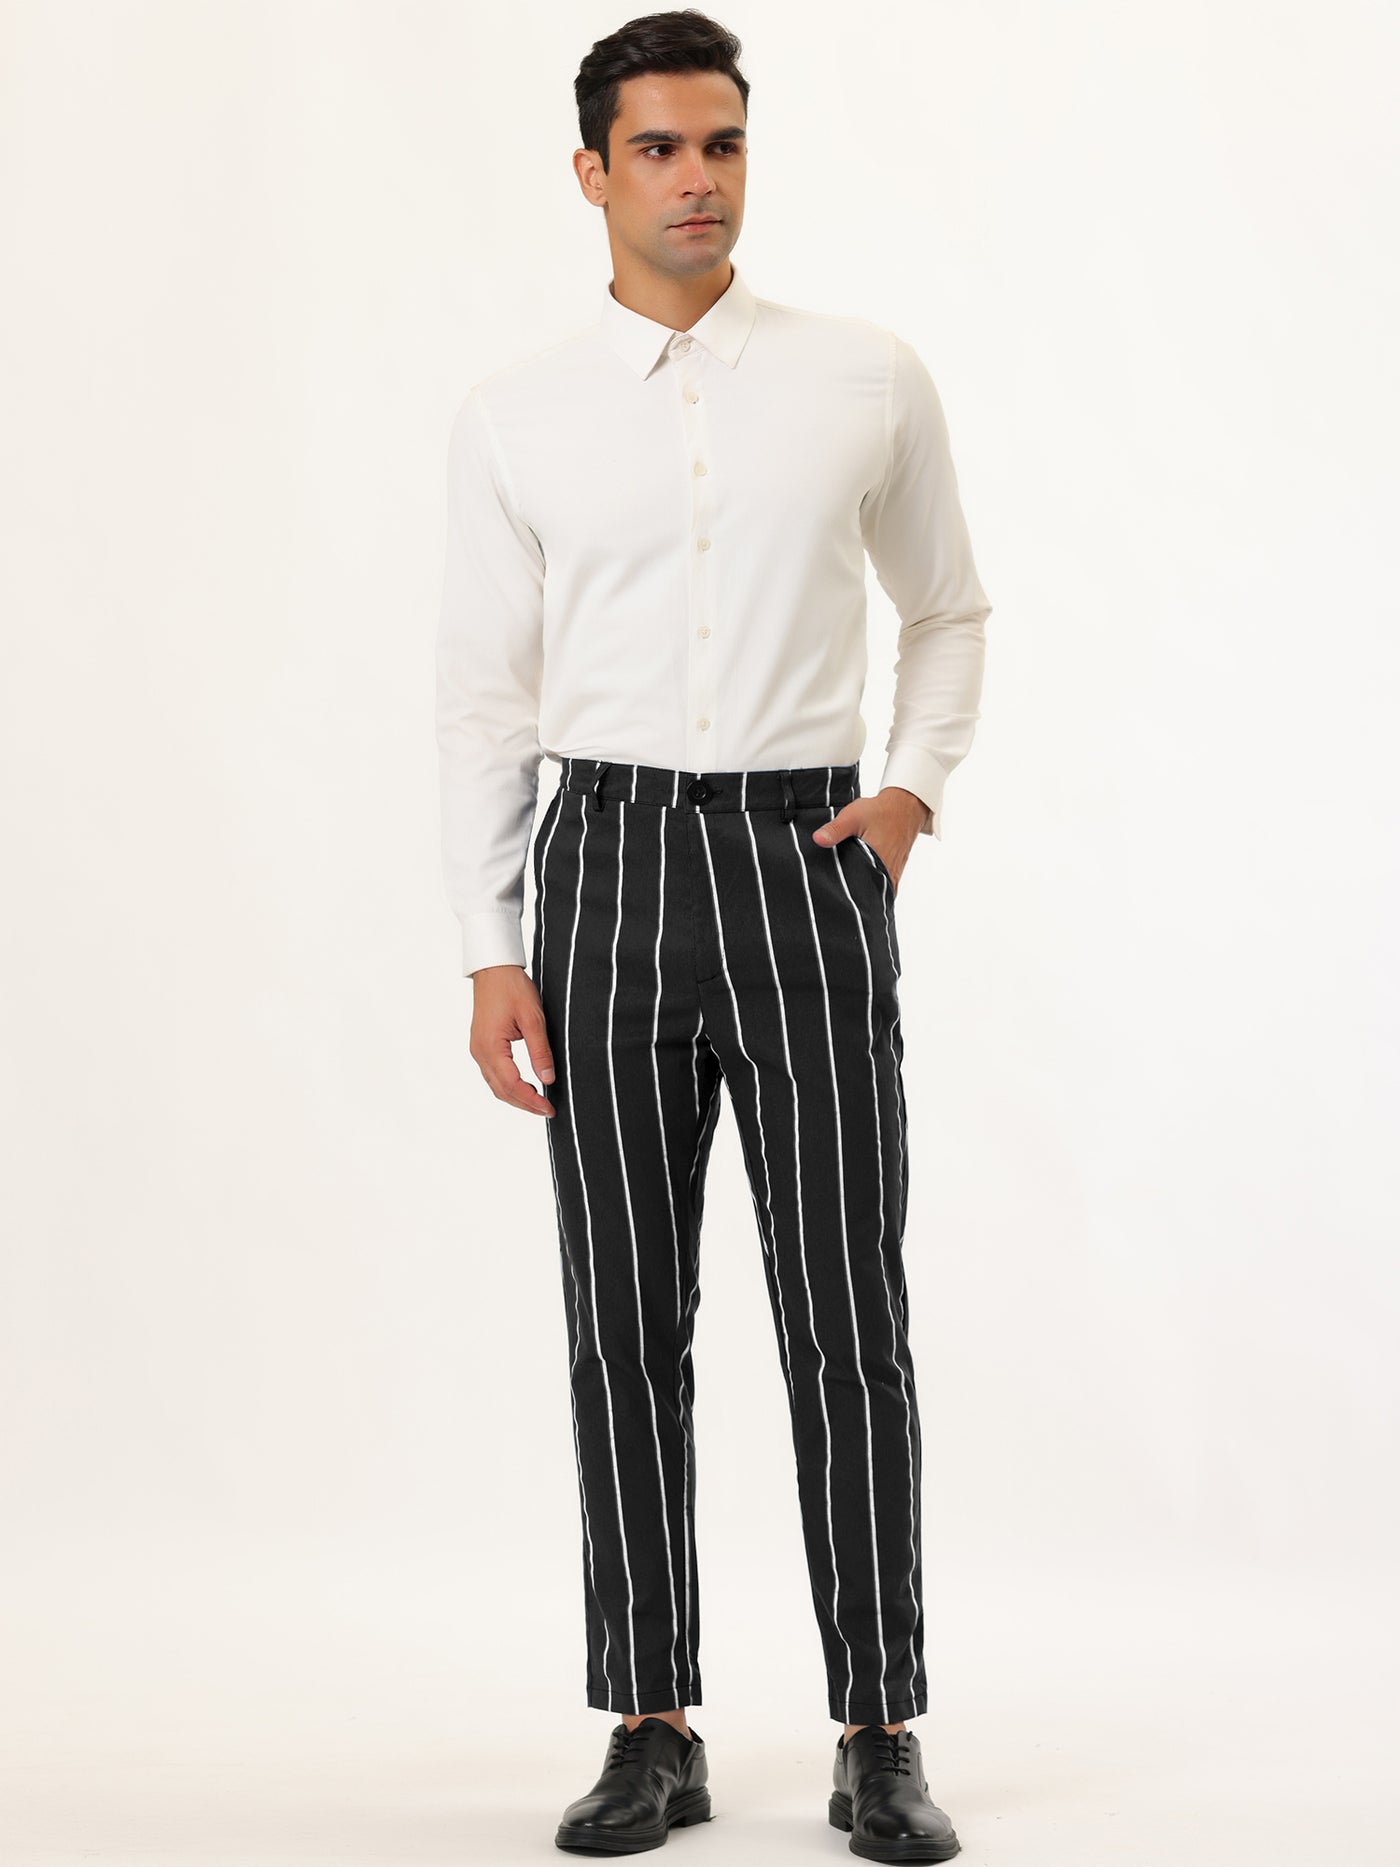 Bublédon Skinny Flat Front Business Suit Trousers Pencil Pants